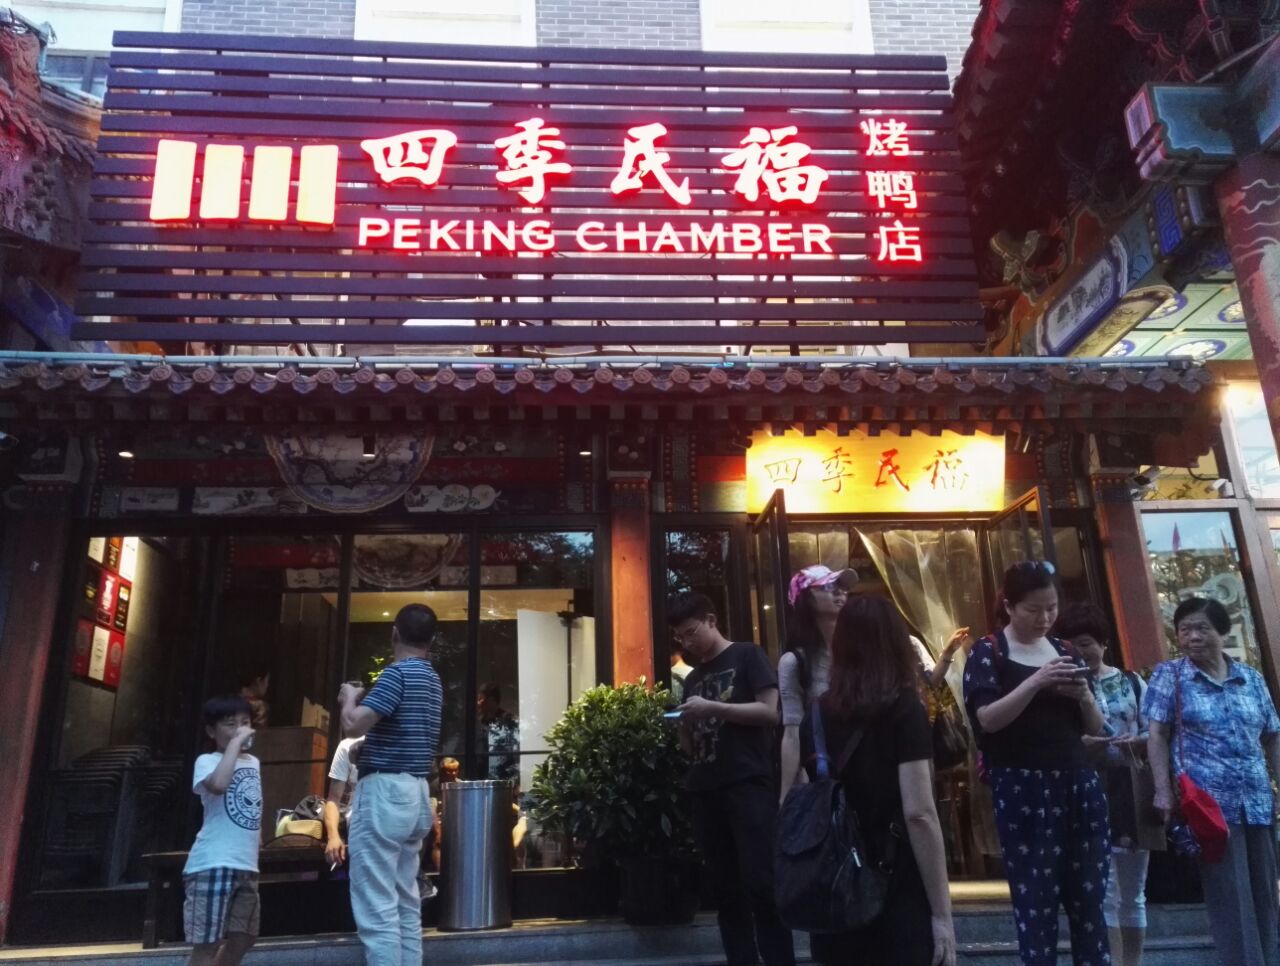 【携程美食林】北京四季民福烤鸭店(灯市口店)餐馆,就餐环境很优雅